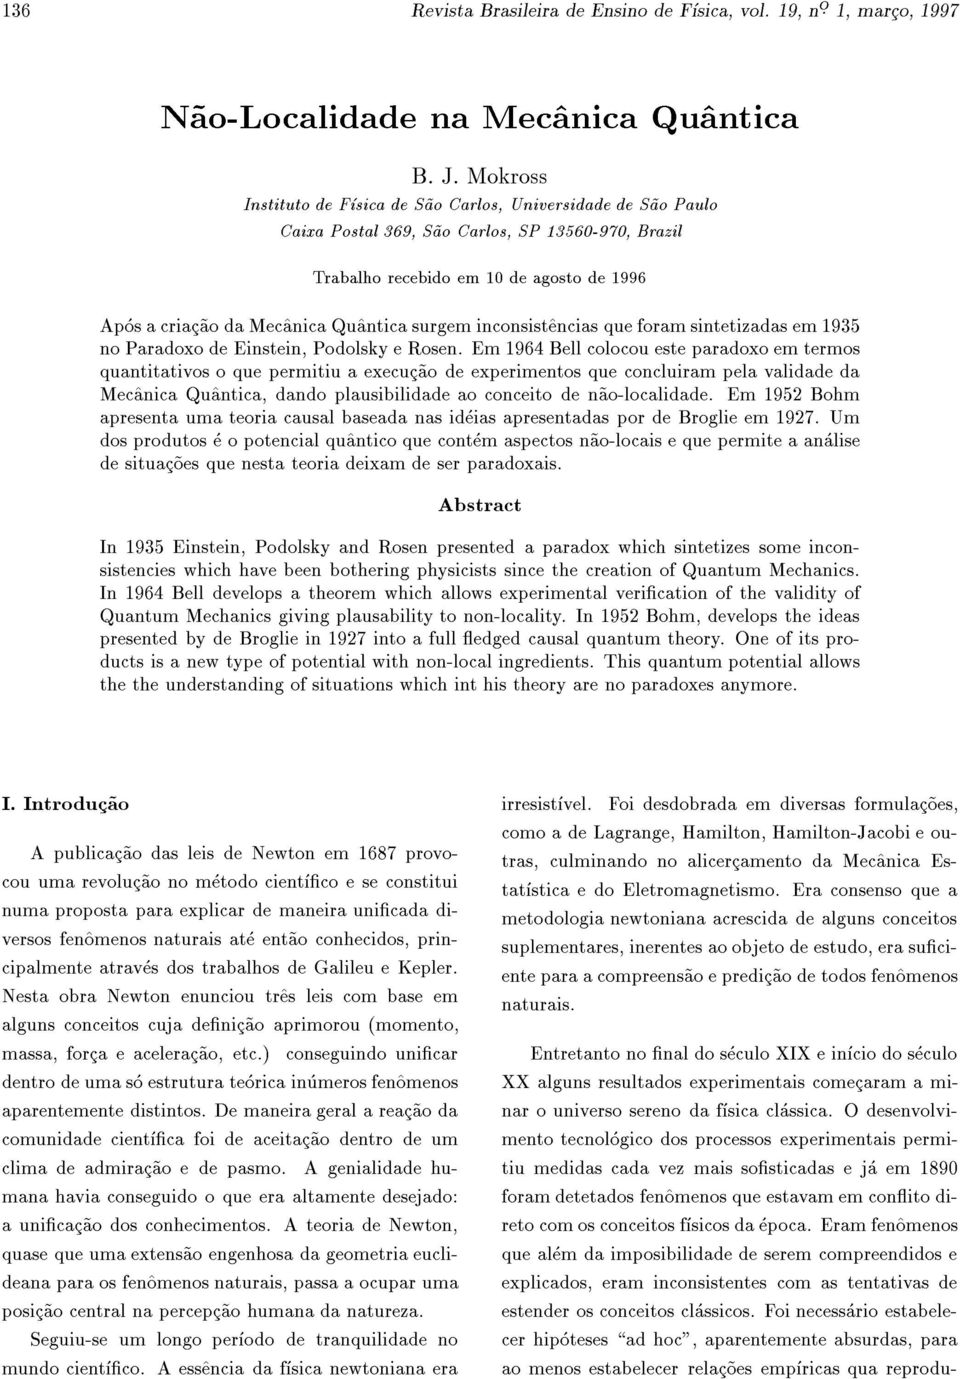 Qu^antica surgem inconsist^encias que foram sintetizadas em 1935 no Paradoxo de Einstein, Podolsky e Rosen.